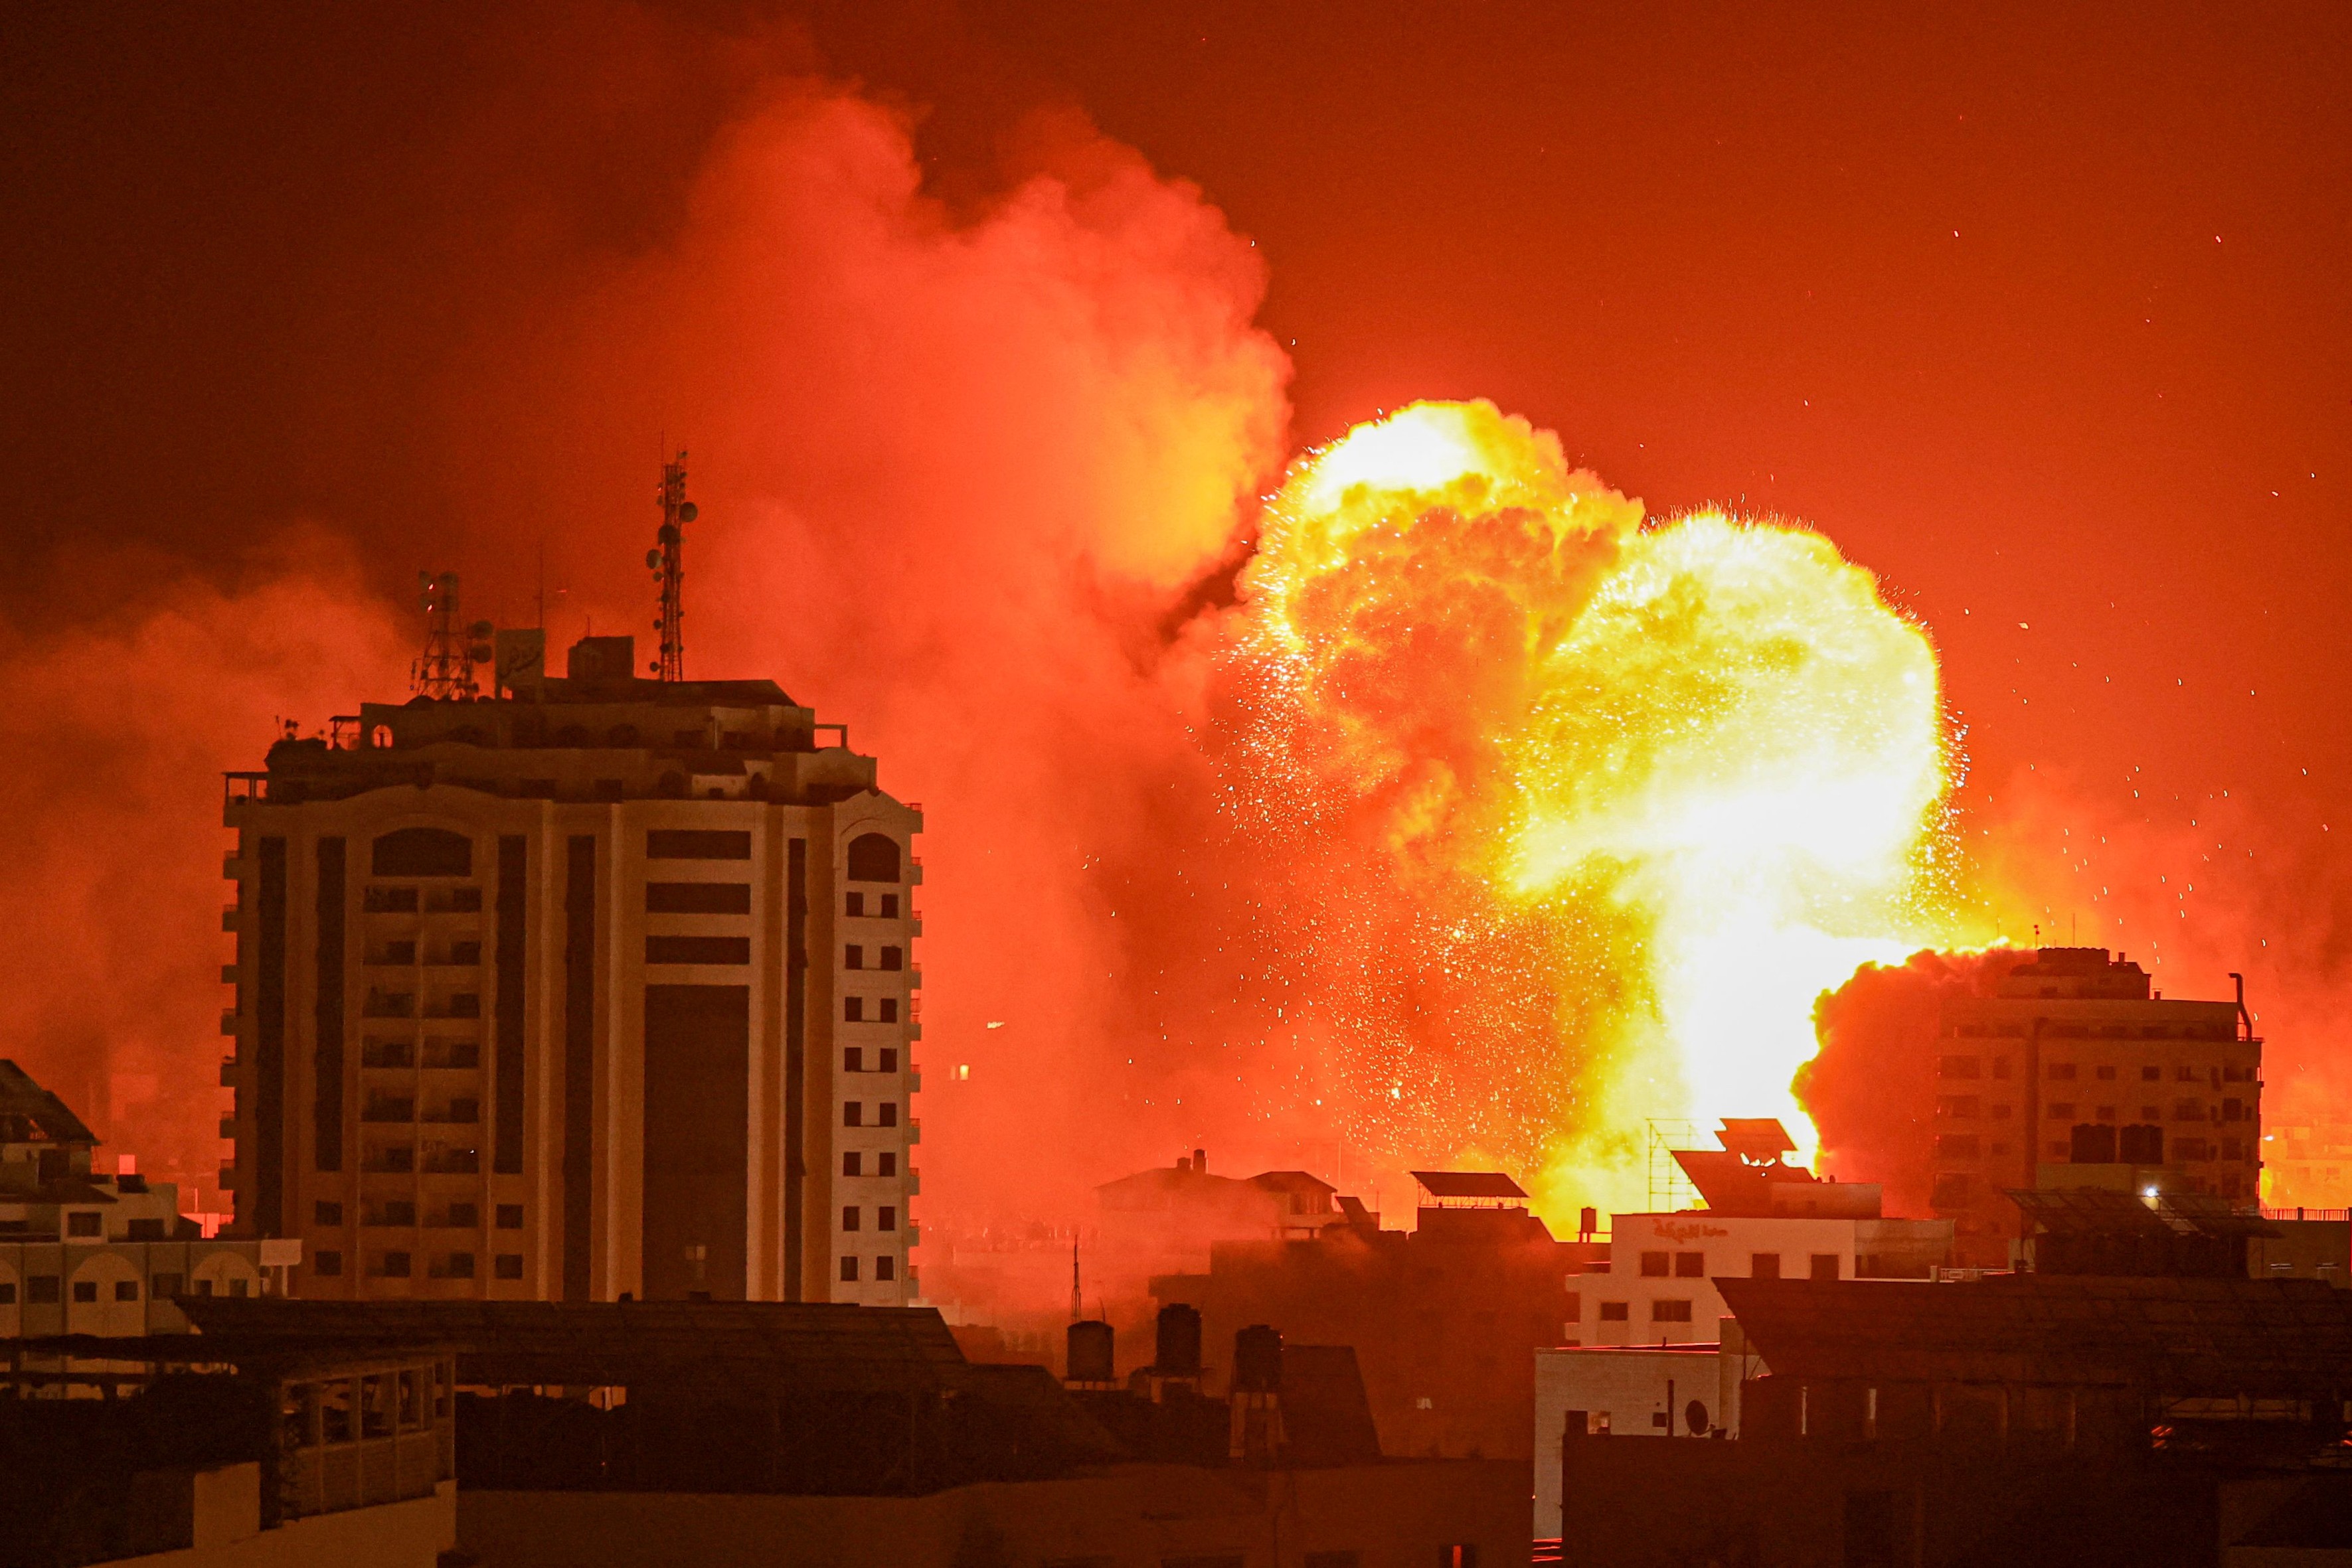 Das Bild zeigt mehrere Gebäude bei Nacht sowie ein großer Feuerball, der durch eine Explosion entstanden ist.